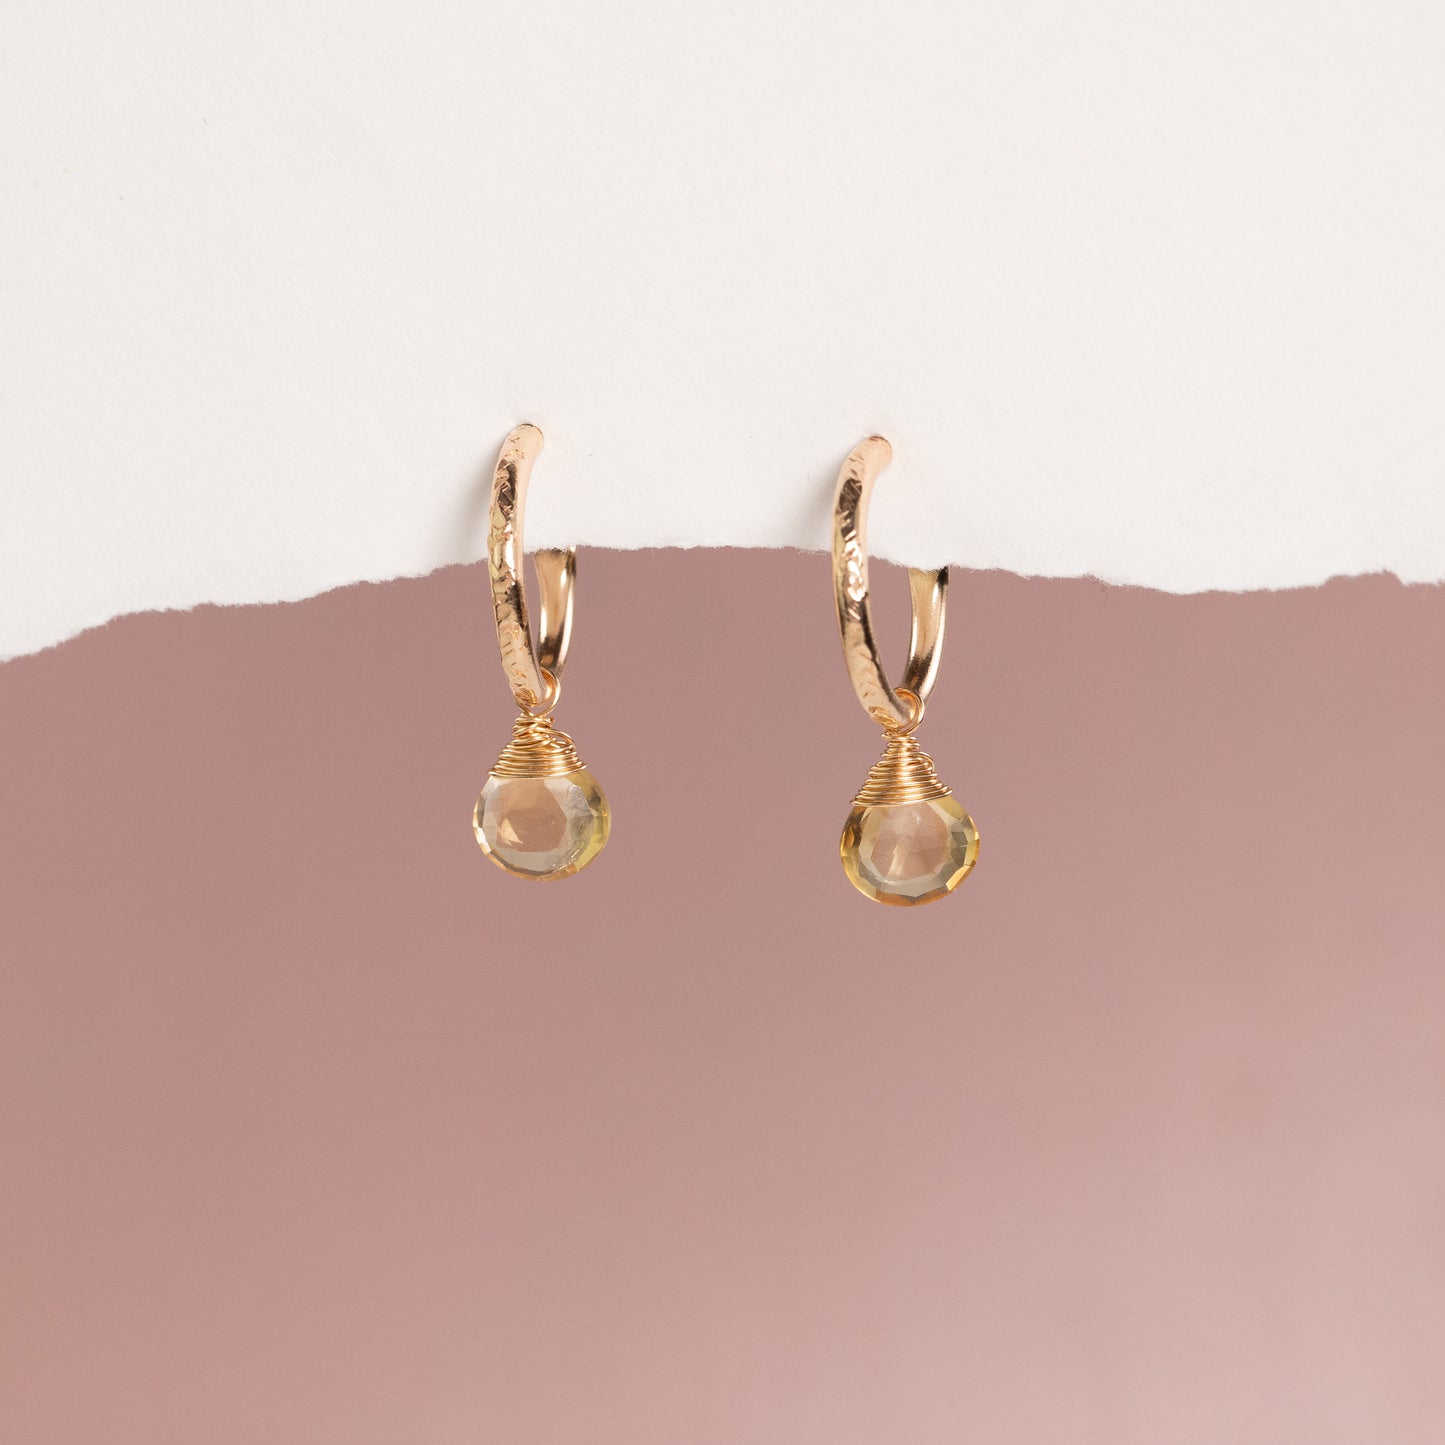 November Birthstone Earrings - Citrine Gold Hoops - 1.5cm